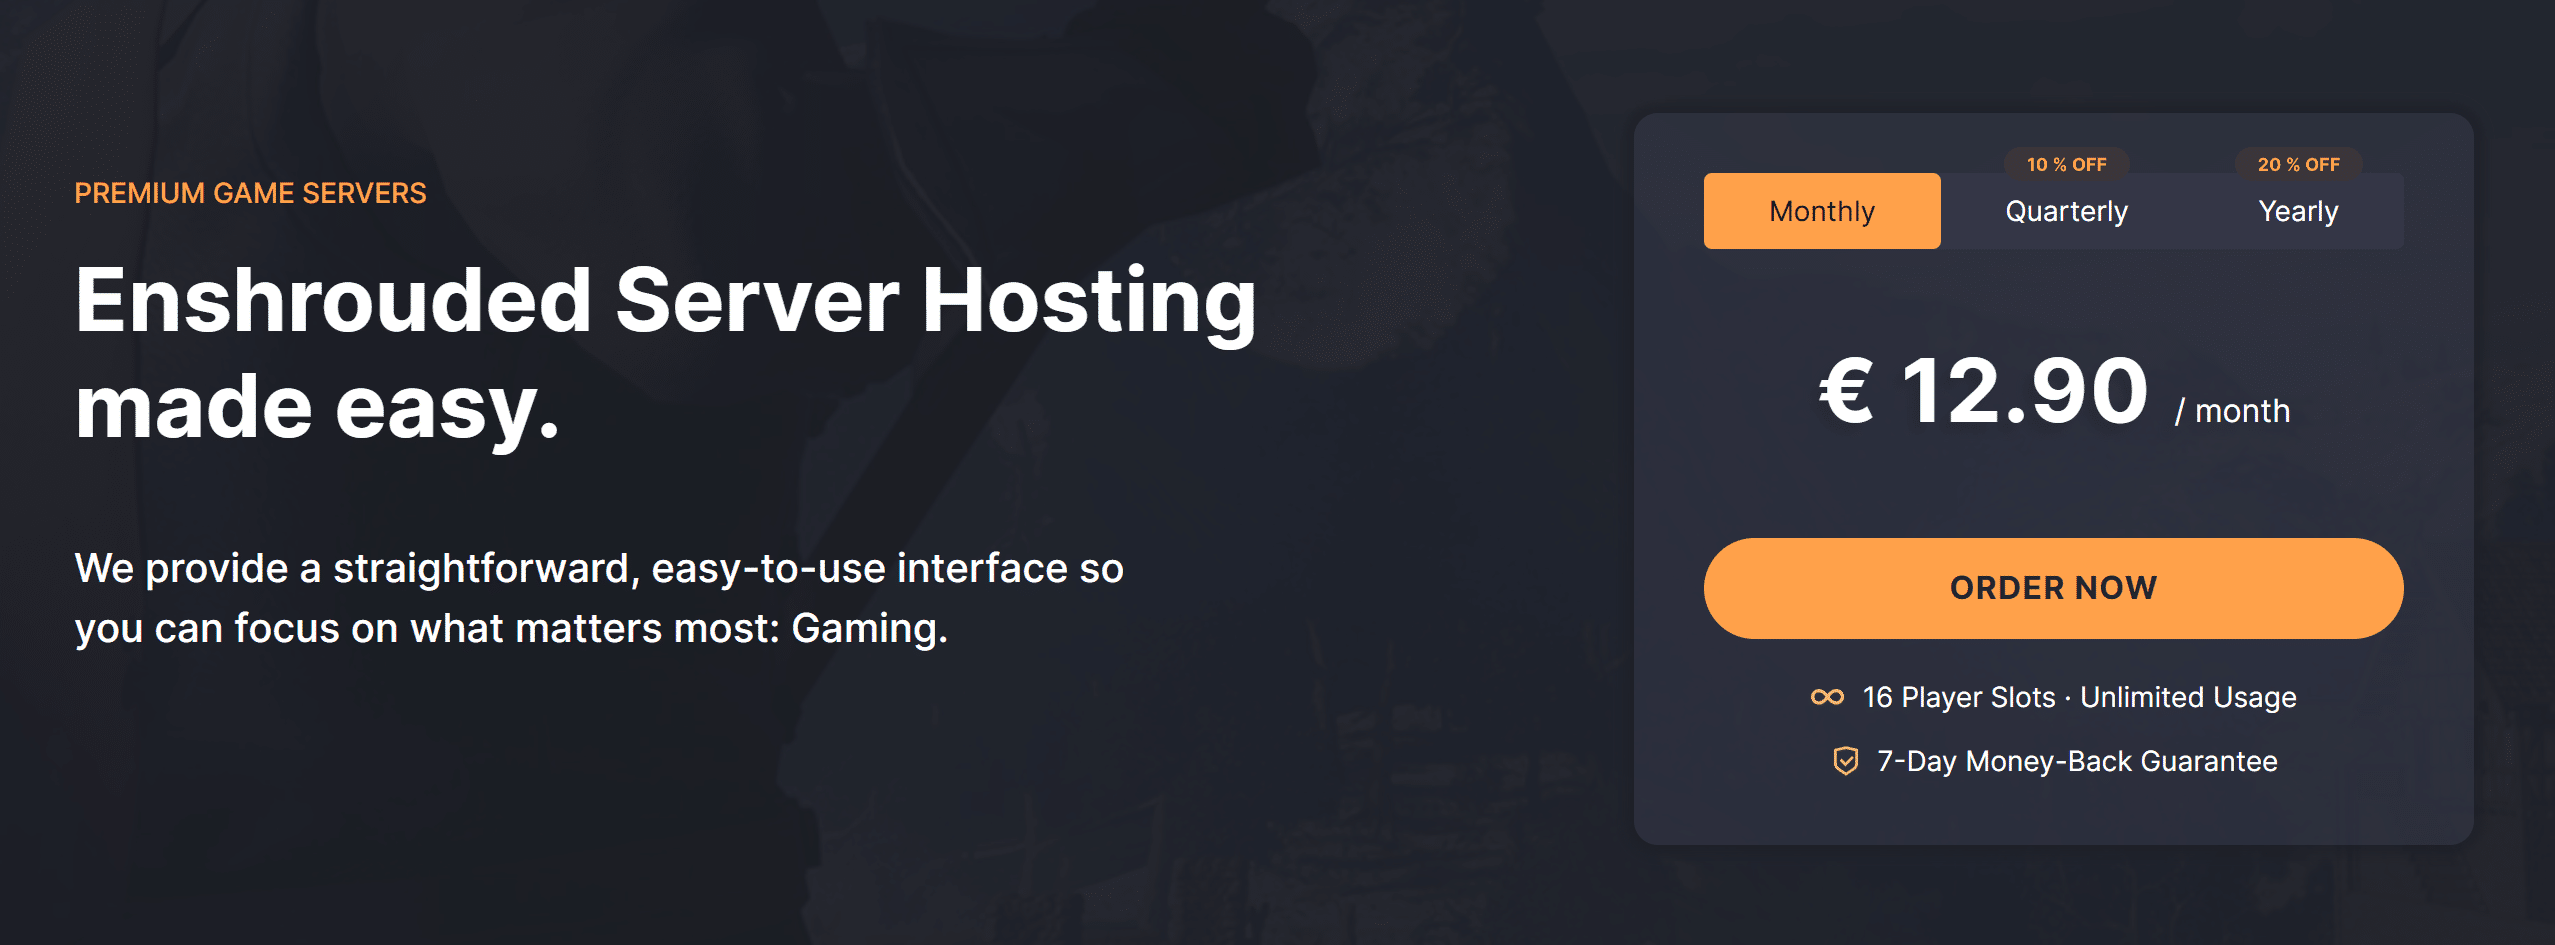 dathost best enshrouded server hosting